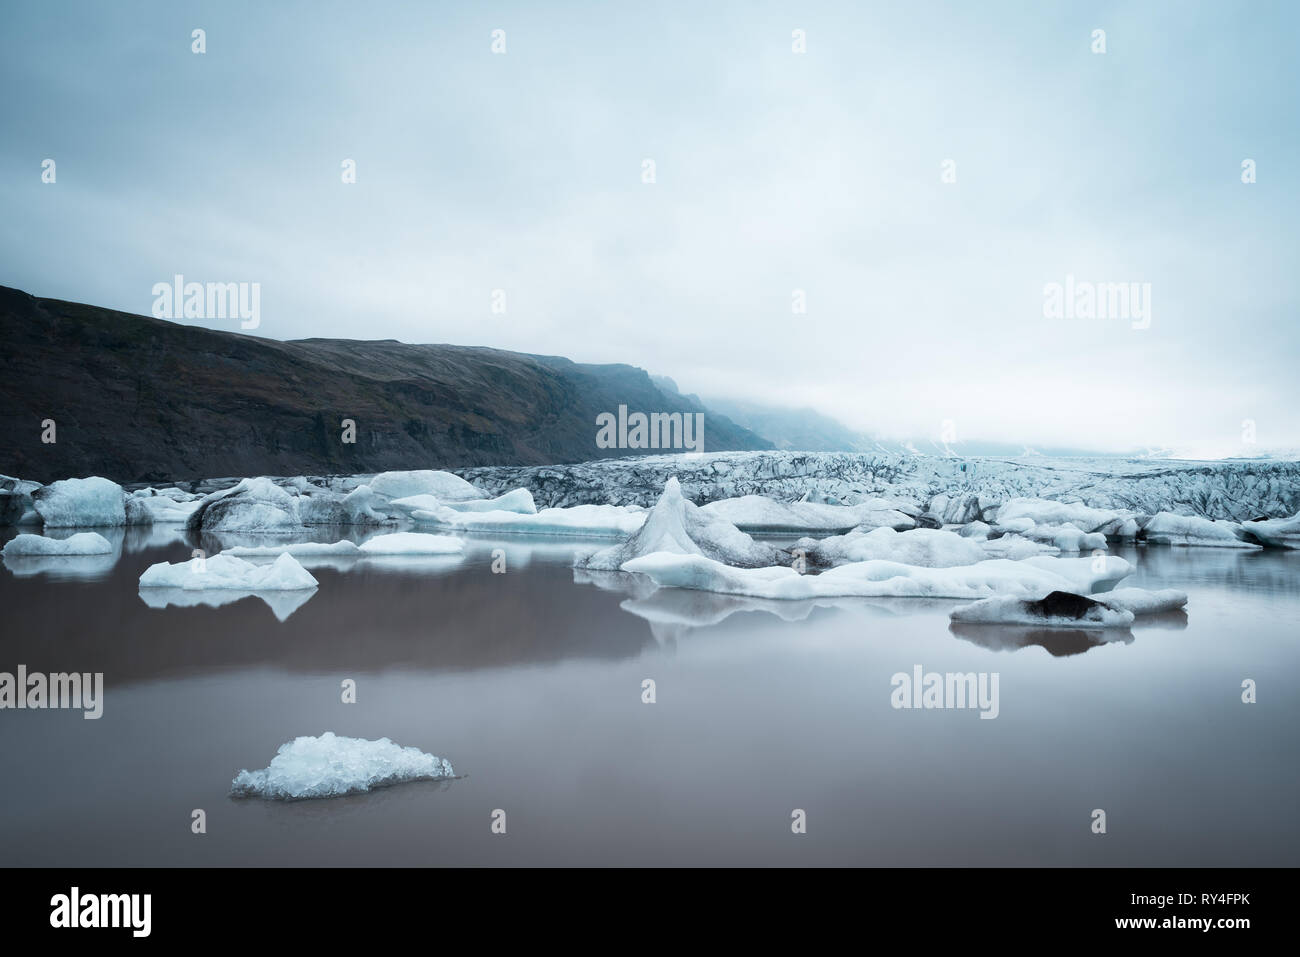 Abend Landschaft mit Eisschollen in den Gletschersee Fjallsarlon. Vatnajökull National Park, Island, Europa. Tolle touristische Attraktion. Kunst processi Stockfoto